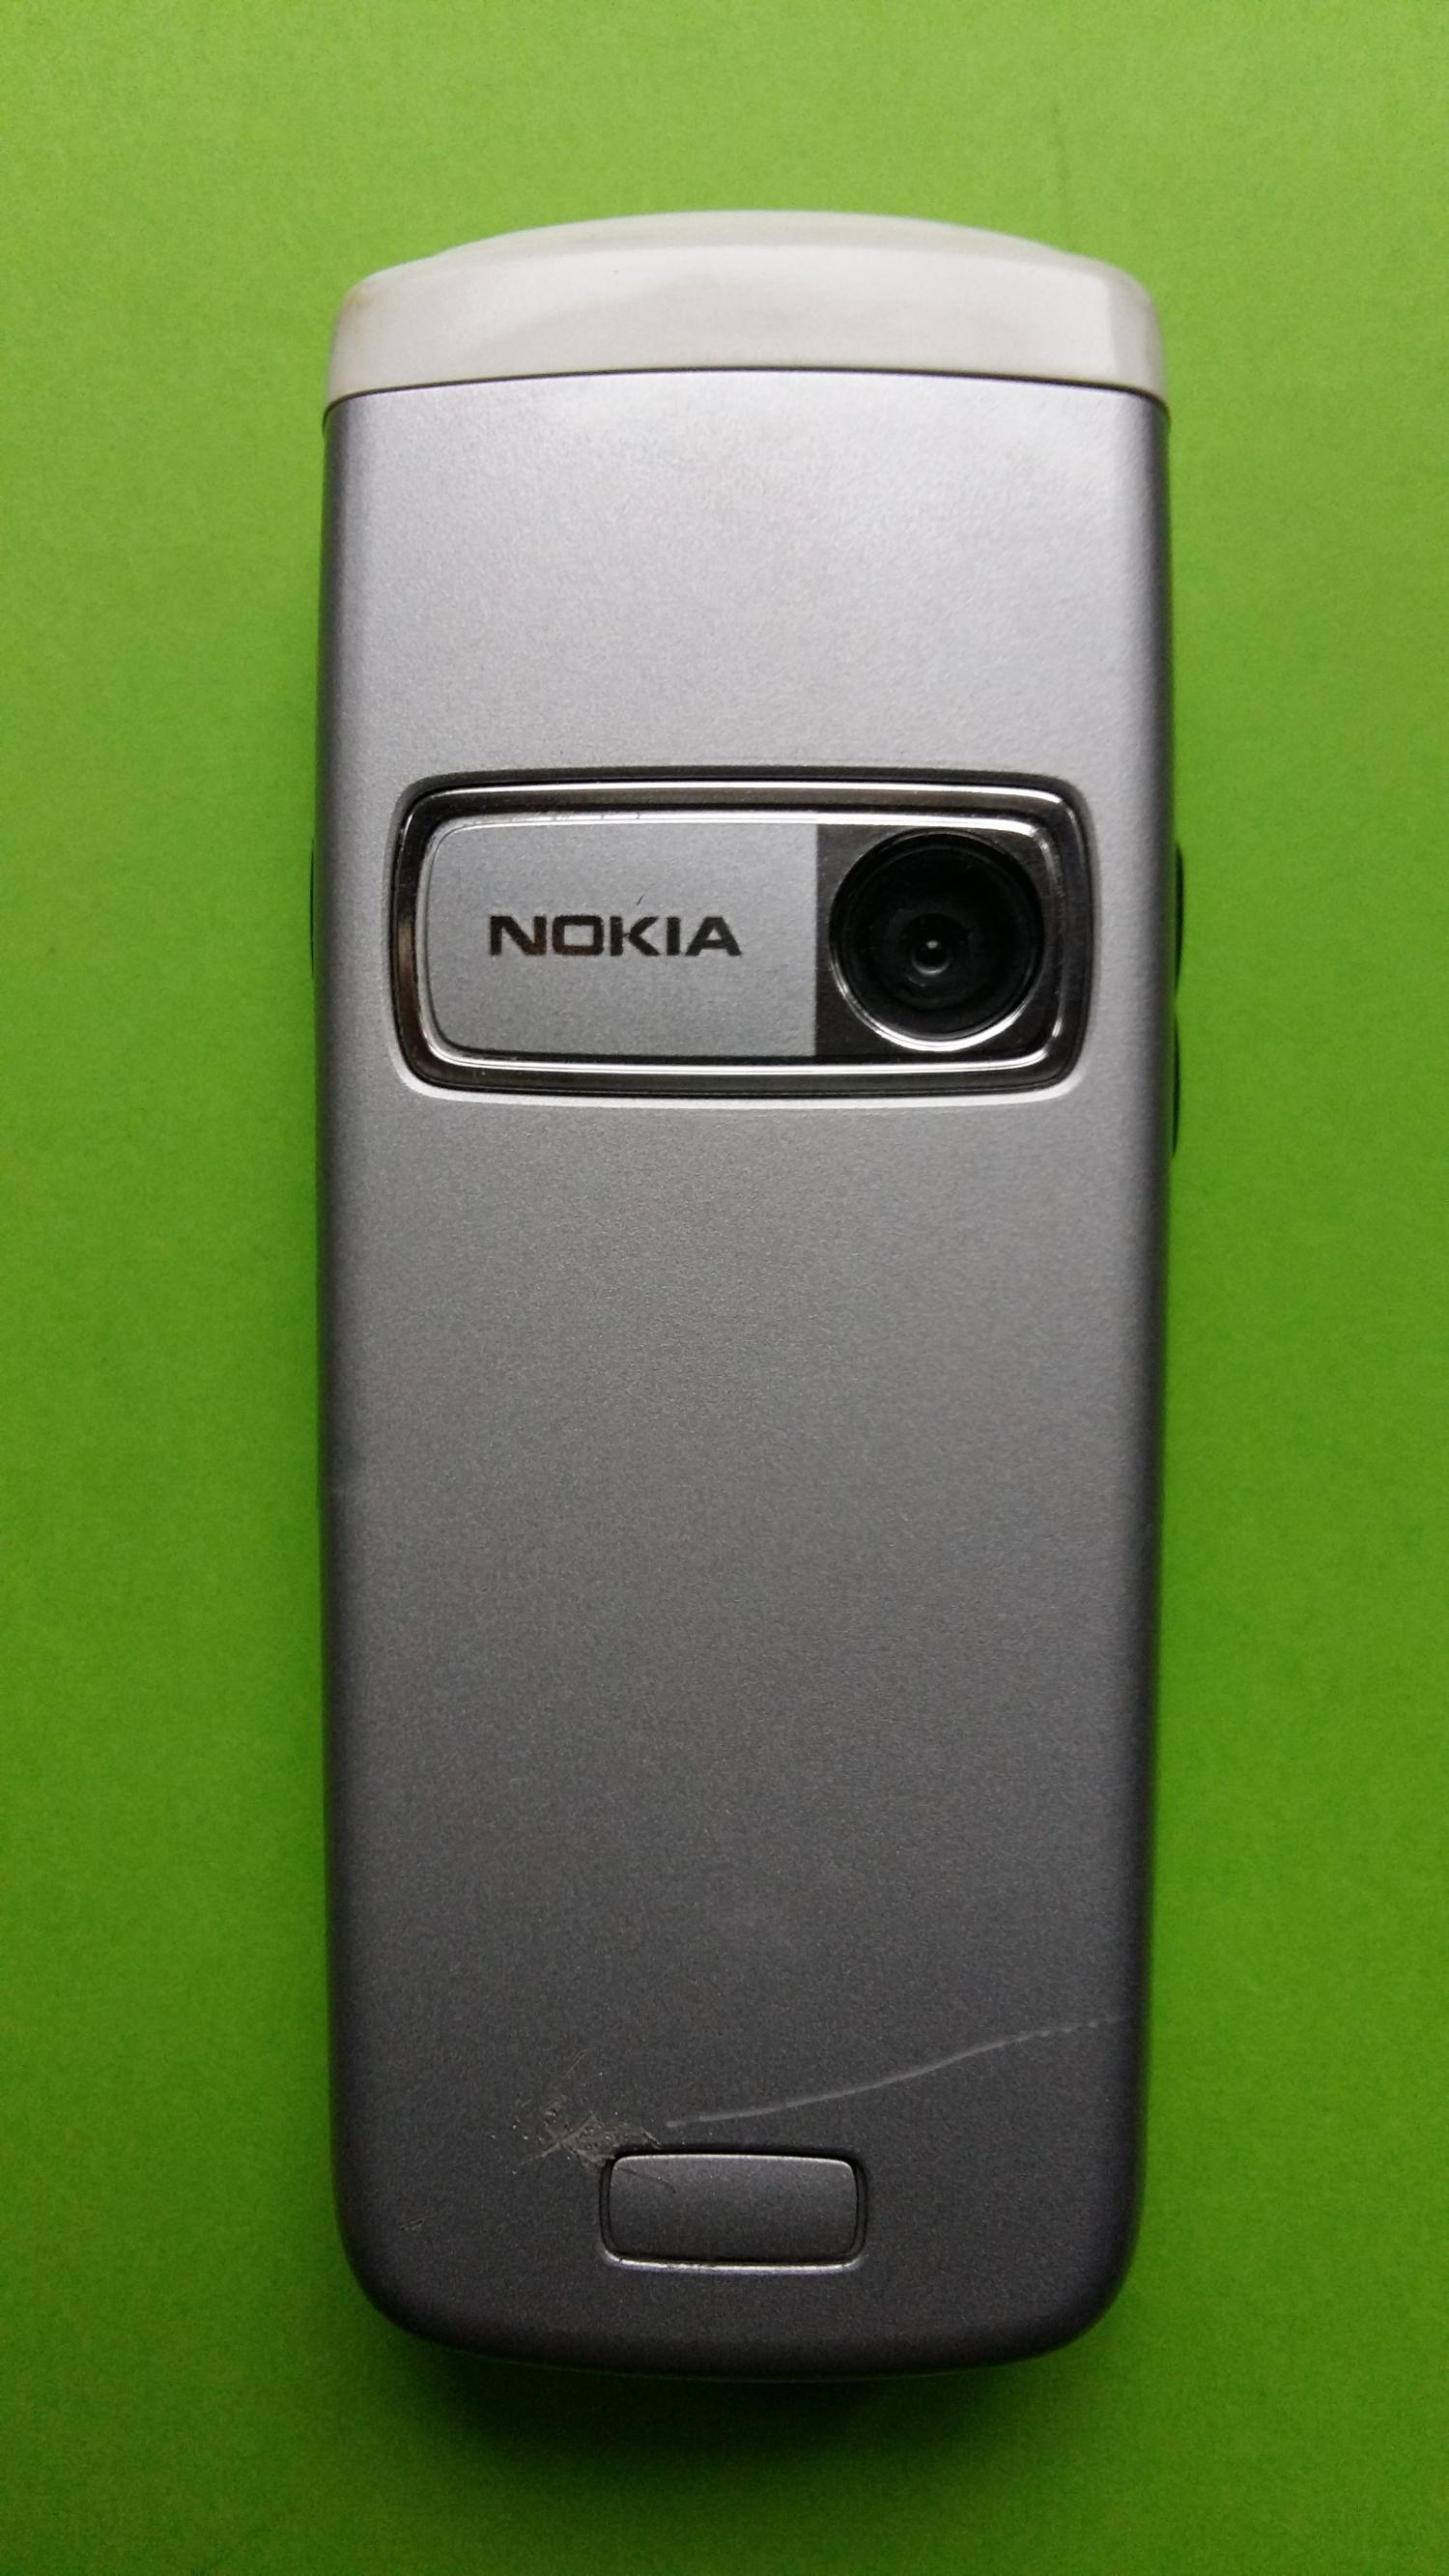 image-7307052-Nokia 6020 (3)2.jpg